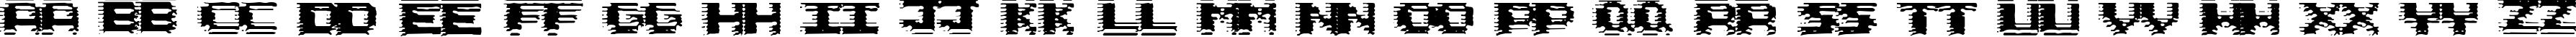 Пример написания английского алфавита шрифтом Circuit Scraping